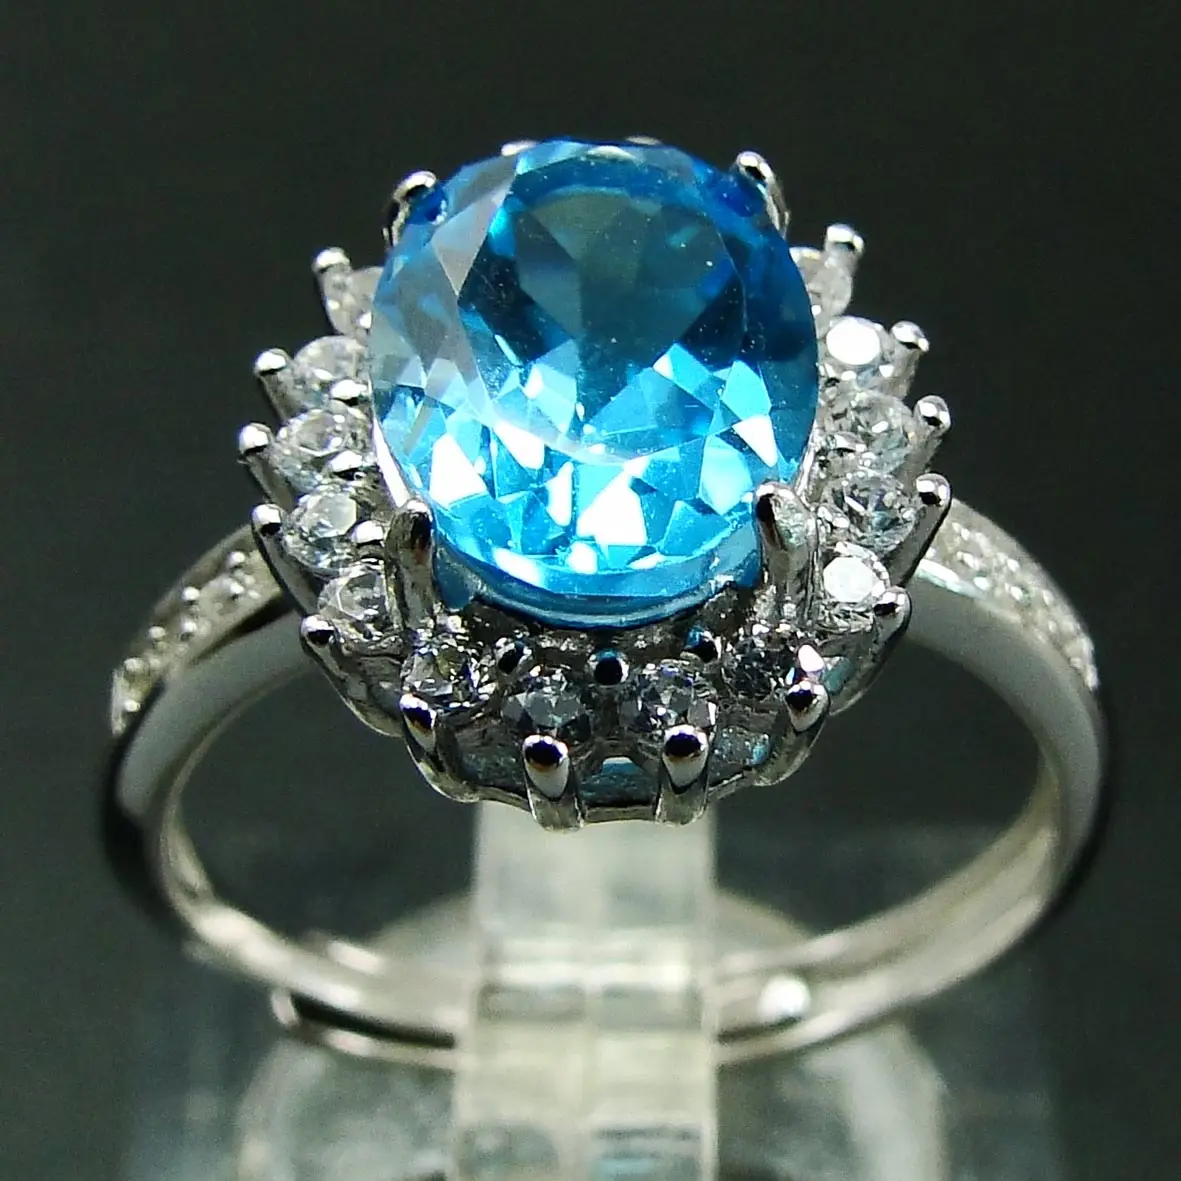 Обручальное кольцо с овальной огранкой небесно-голубым топазом и бриллиантовой оправой, 18 К, белое золото, серебро 925 пробы, ювелирные изделия